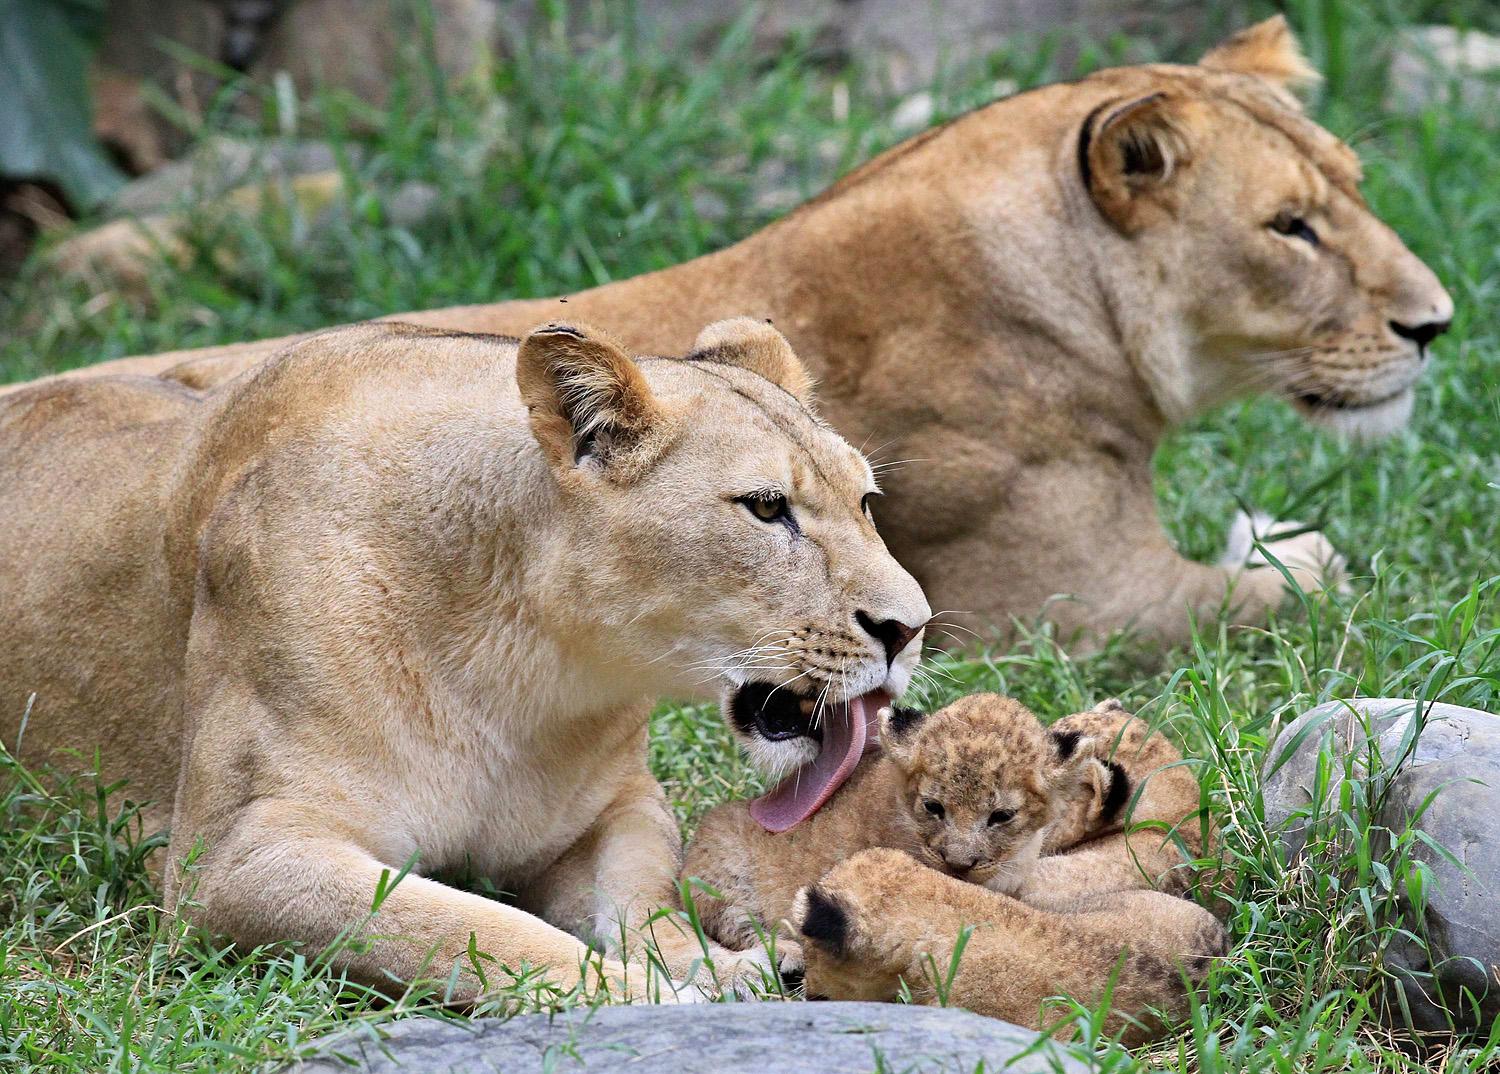 Eleven példányok és múzeumban őrzött maradványok alapján rekonstruálták az oroszlán genetikai 